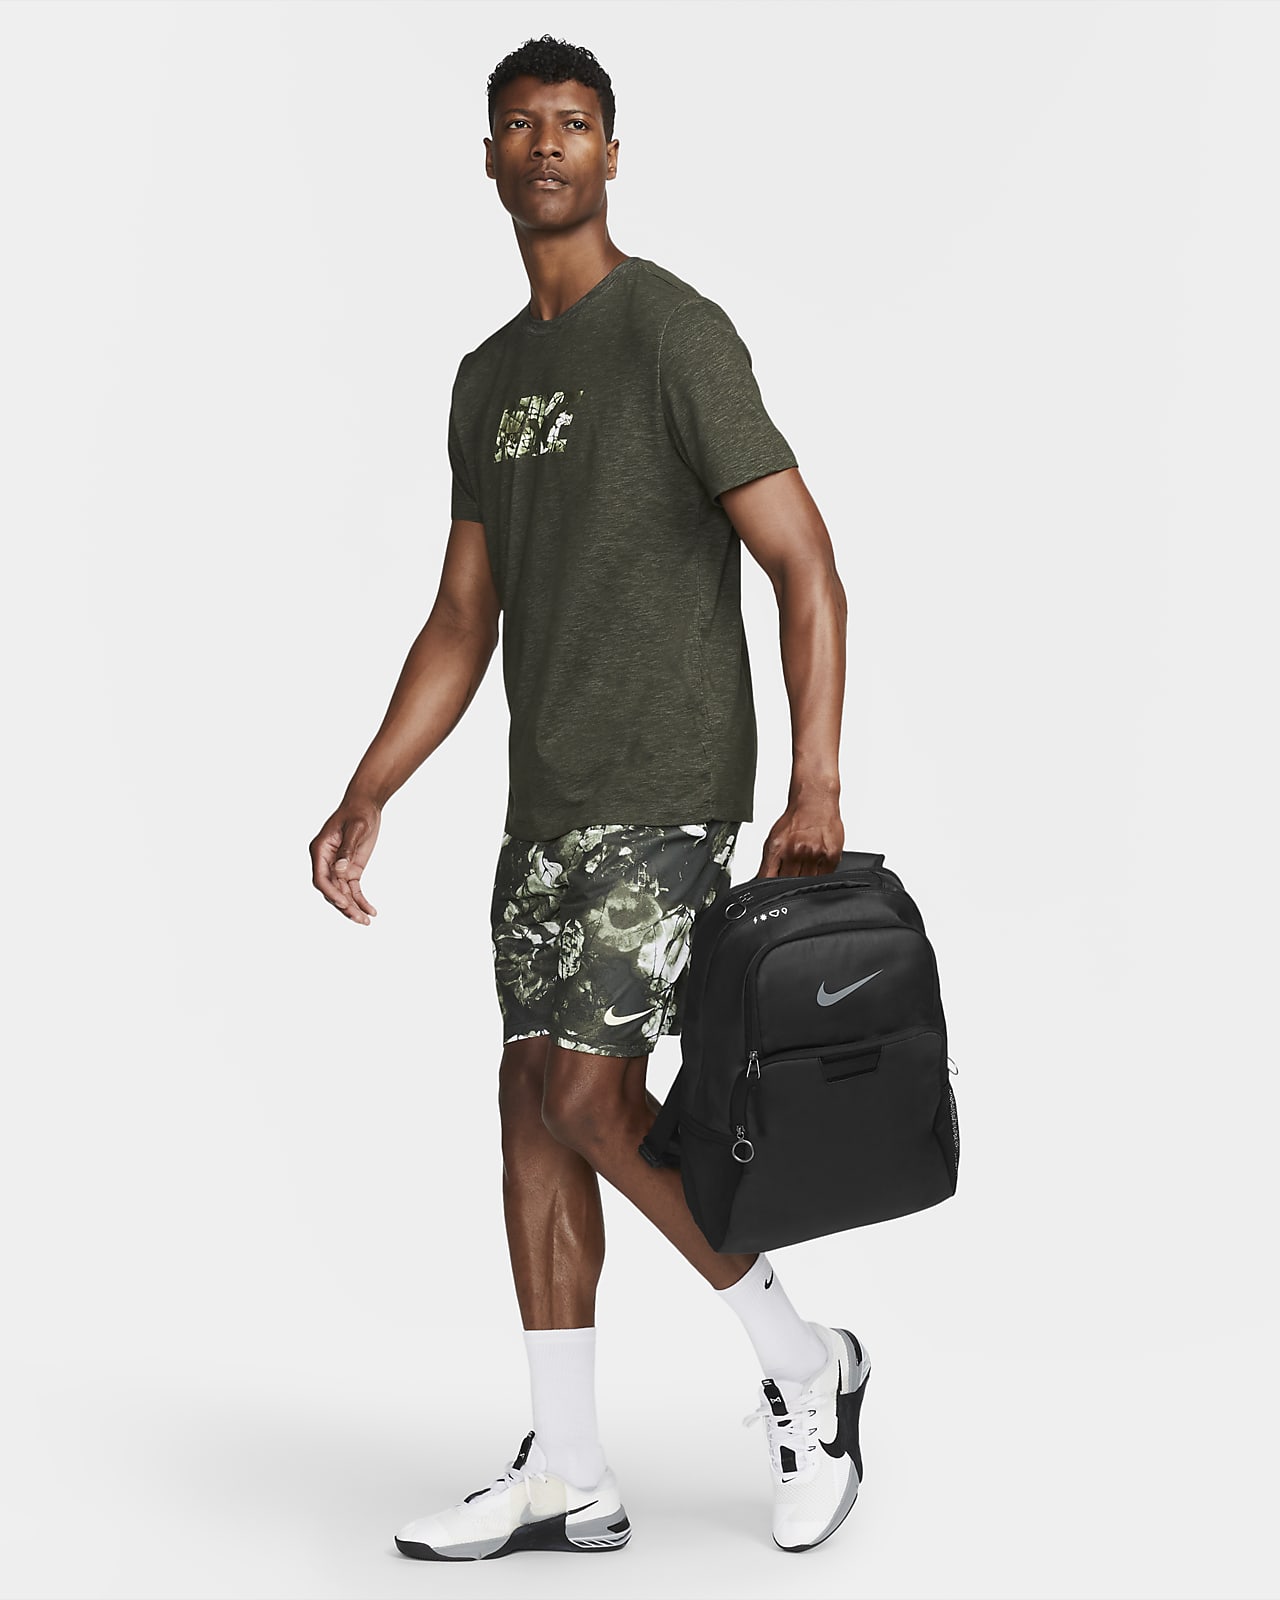 Nike Brasilia Winterized Training D - Lifestyle Backpacks